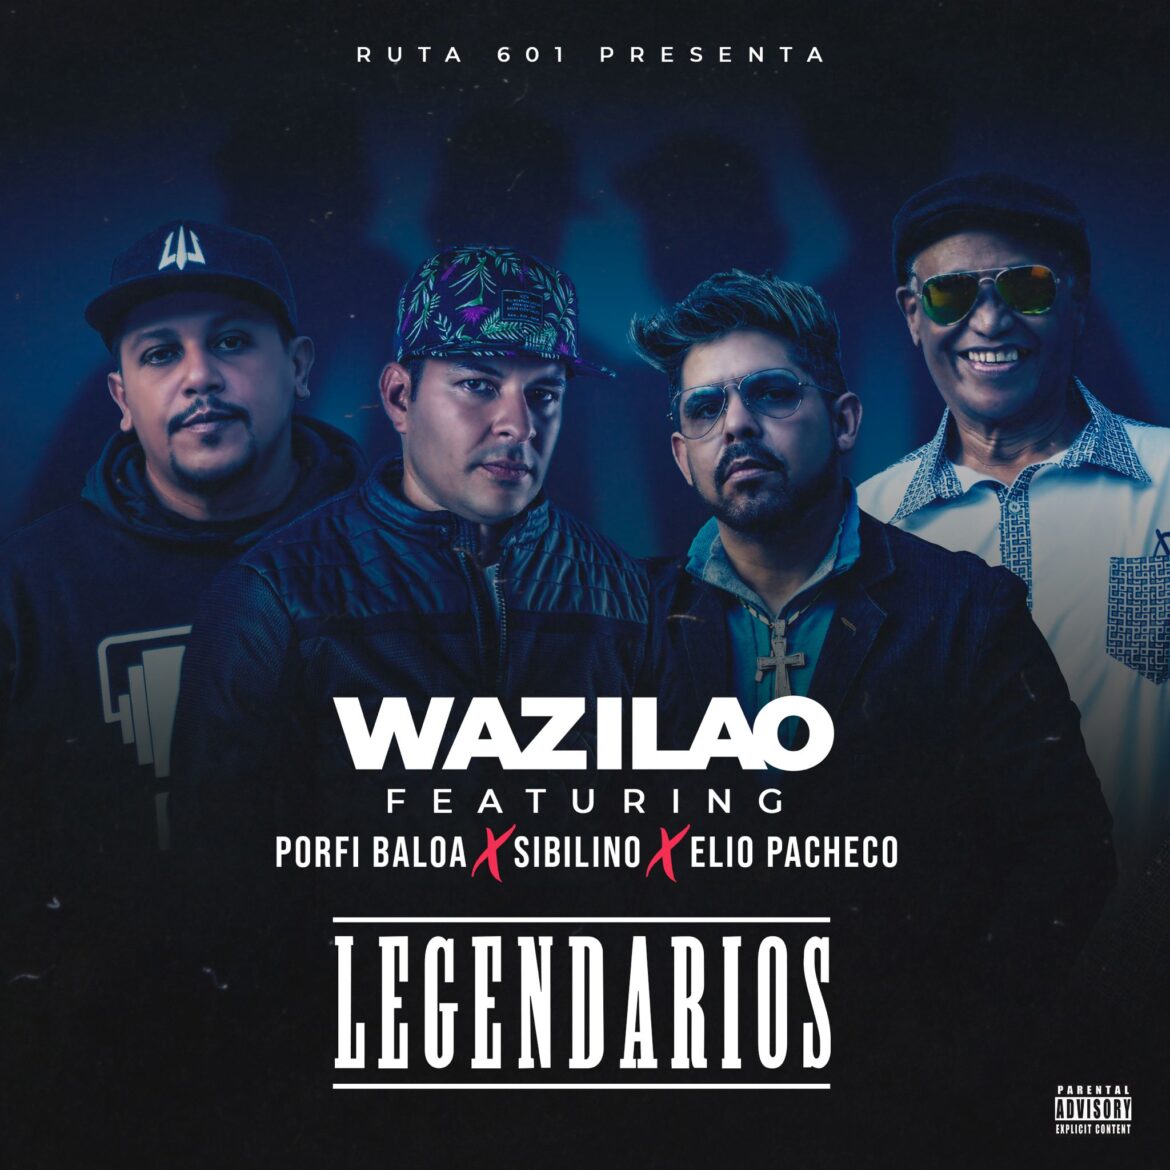 Wazilao lanza “Legendarios” Feat Porfi Baloa, Sibilino y Elio Pacheco